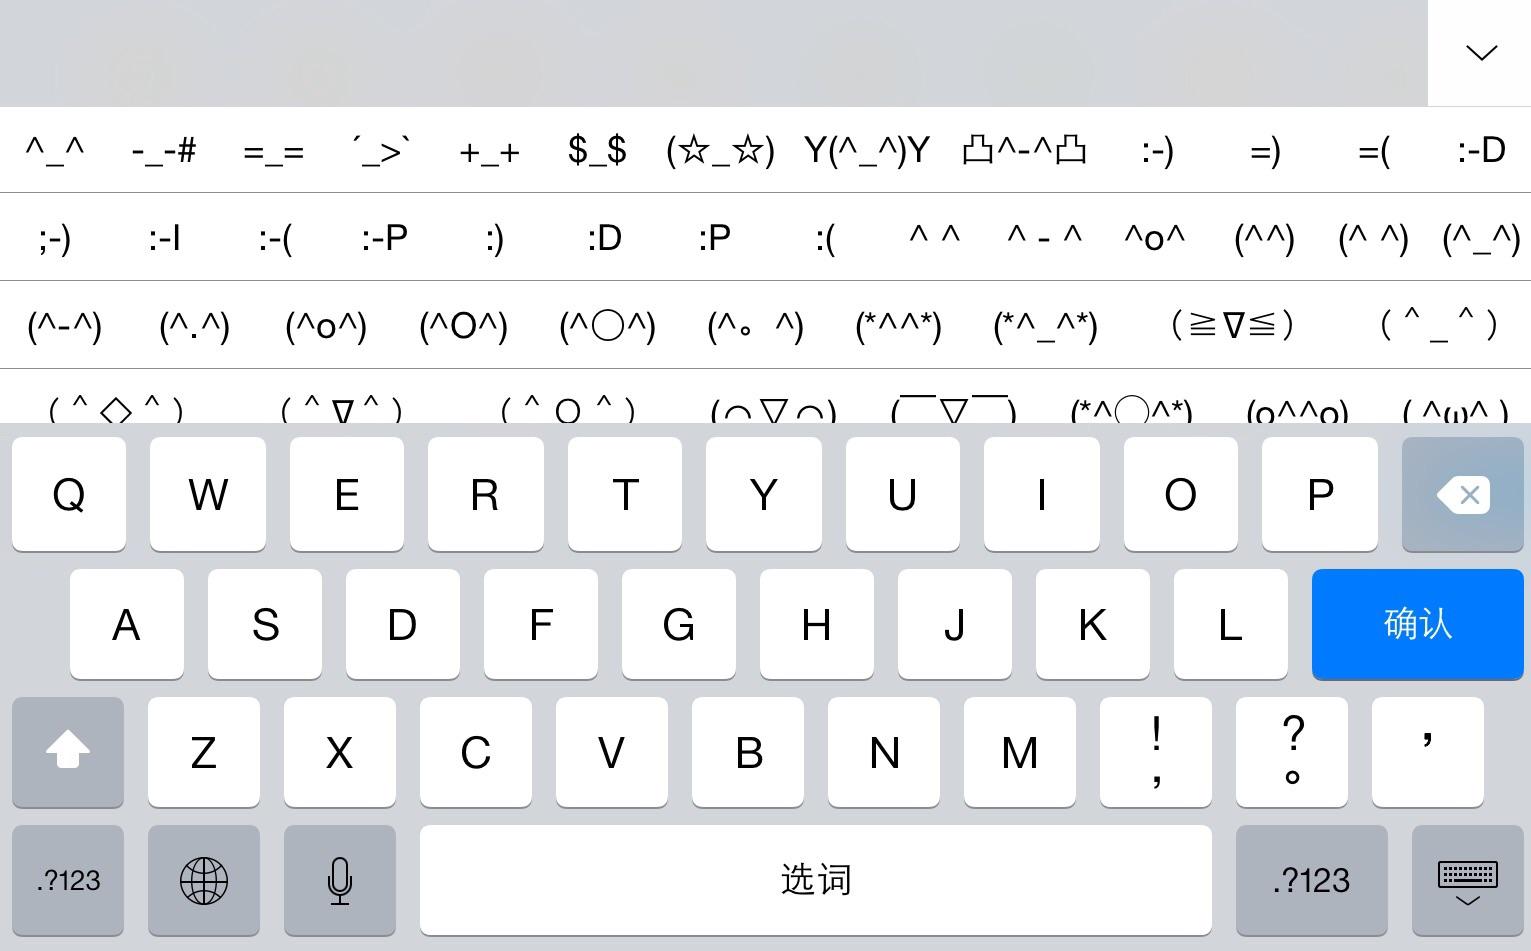 为什么ios的中文键盘有符号表情,而英文键盘没